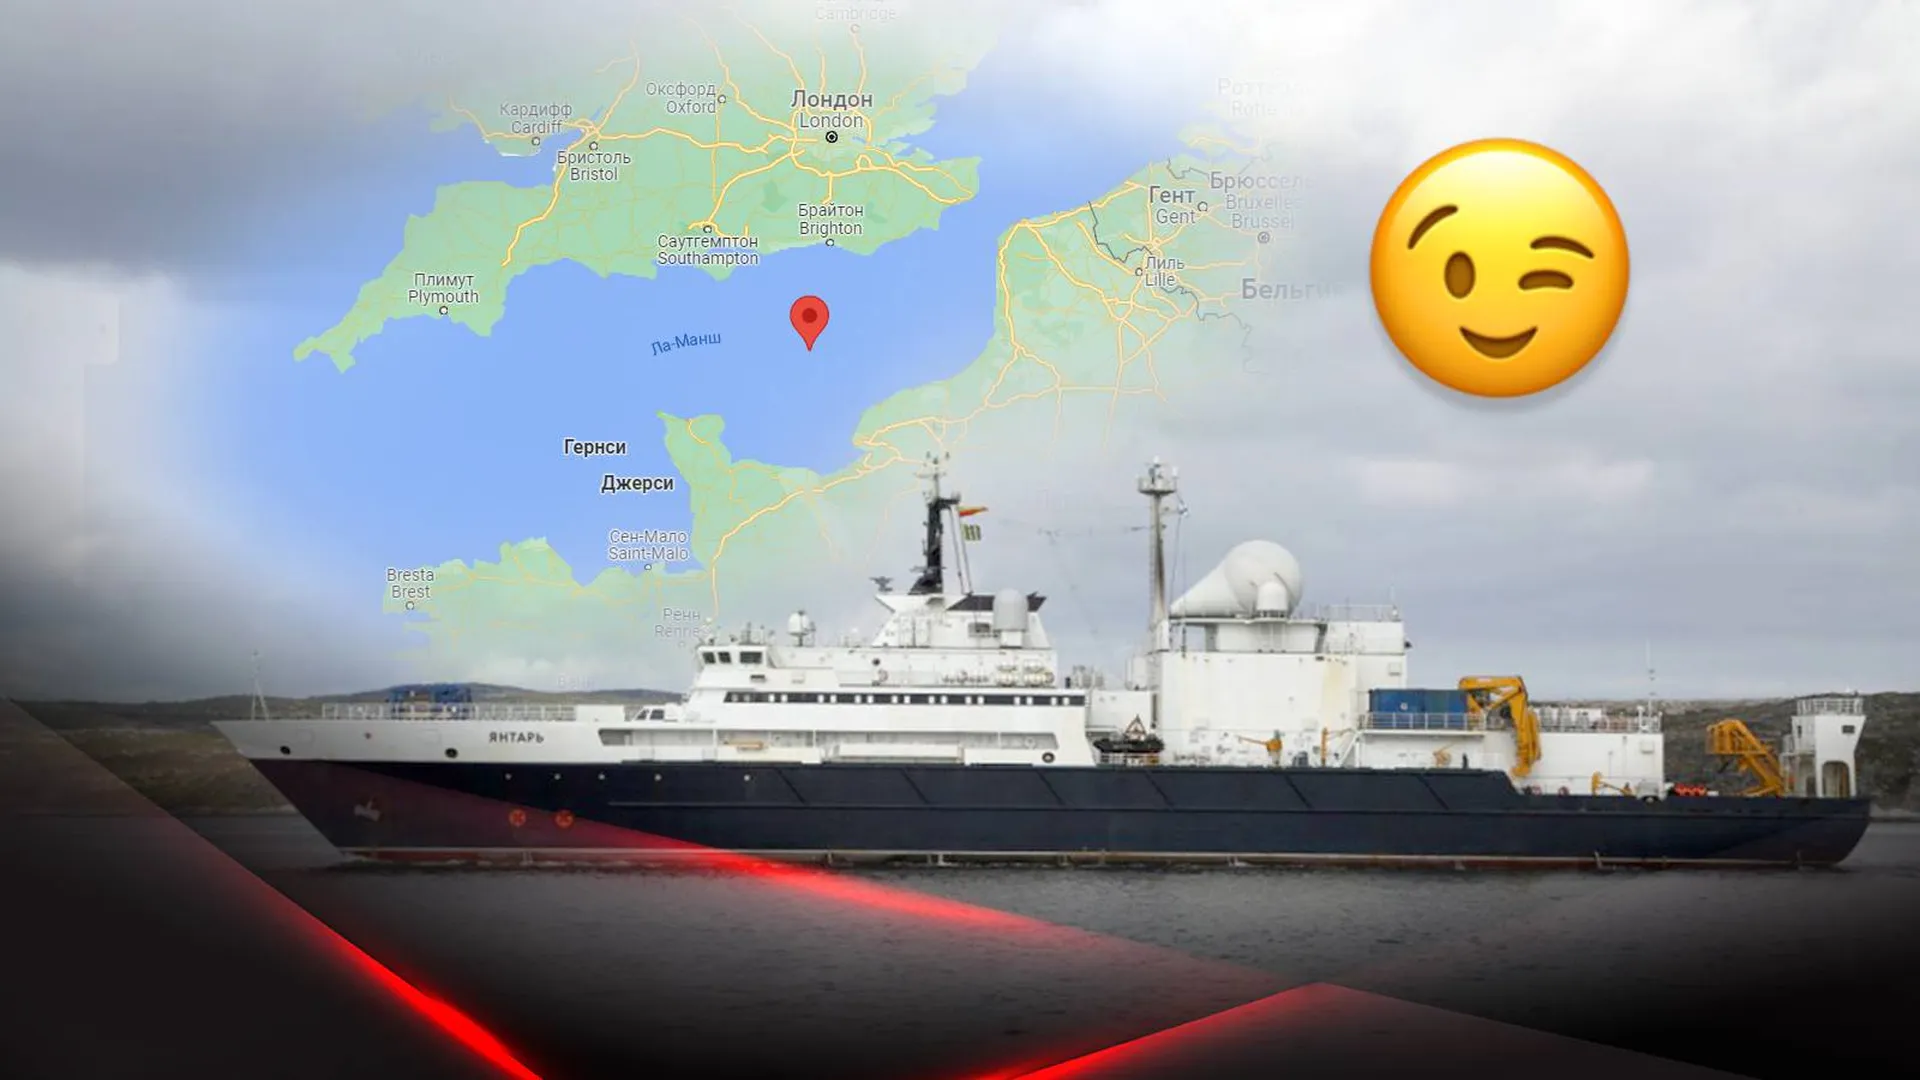 Океанографическое исследовательское судно "Янтарь" на фоне карты Ла-Манша